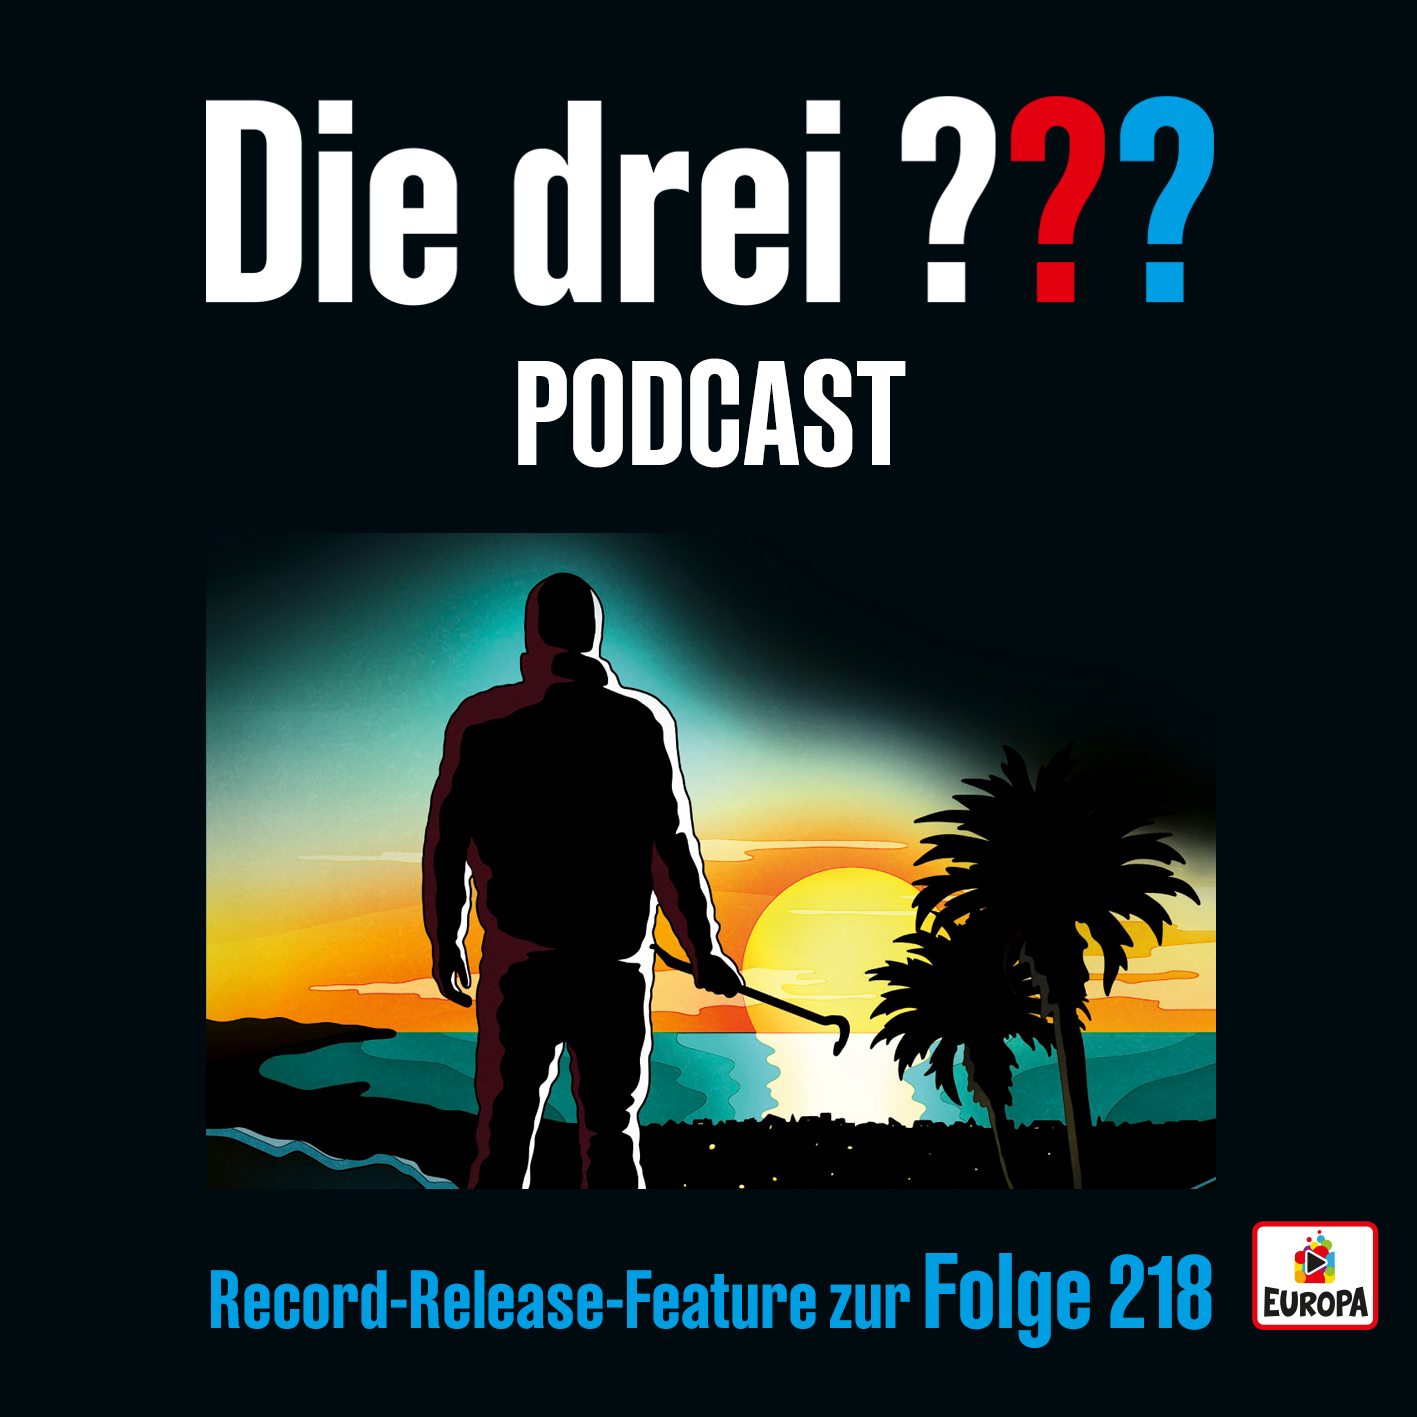 Die drei ??? Record Release Feature zur Folge 218  - Der neue Podcast ist da!